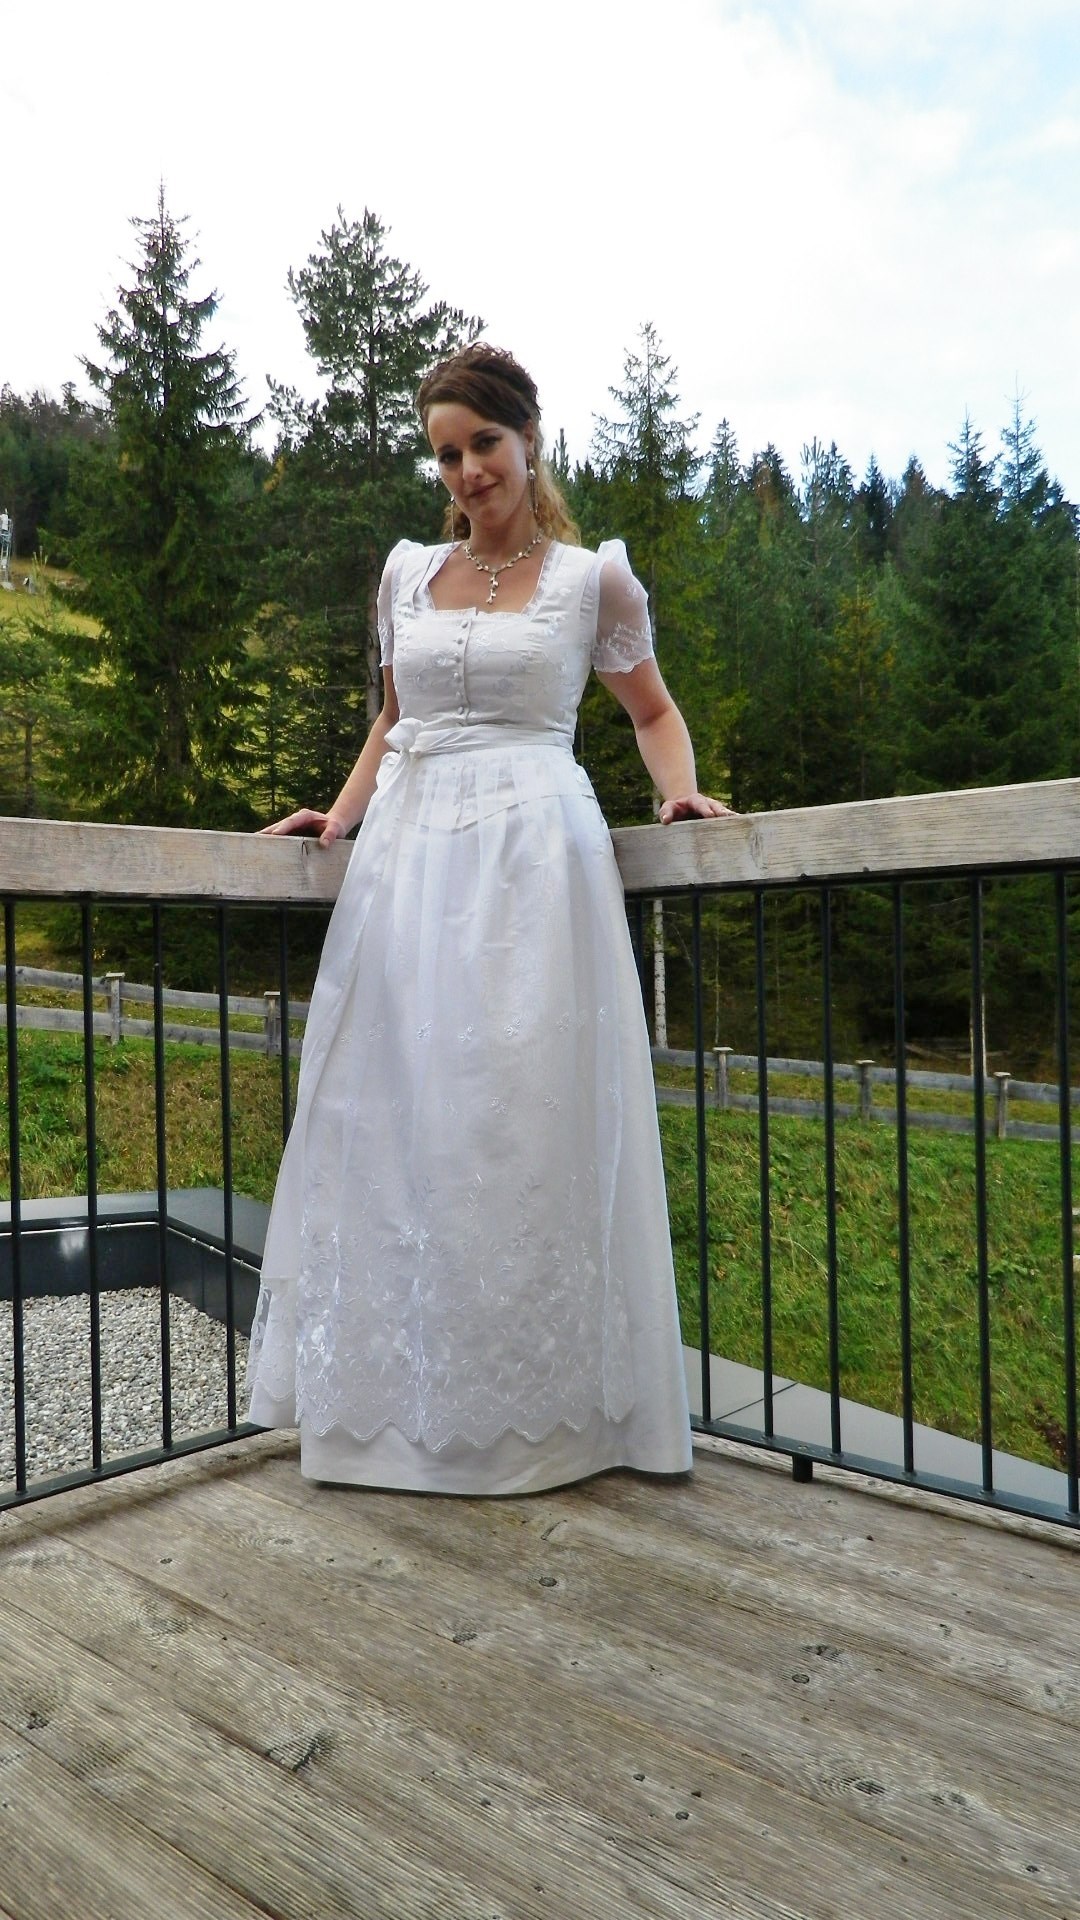 Hochzeitsfotograf: Fotoshooting Trachtenmode für die Braut

Mode by Parzinger

(c)2016 by Paparazzi-Tirol | mamaRazzi-foto - Paparazzi Tirol | MamaRazzi - Foto | Isabella Seidl Photography